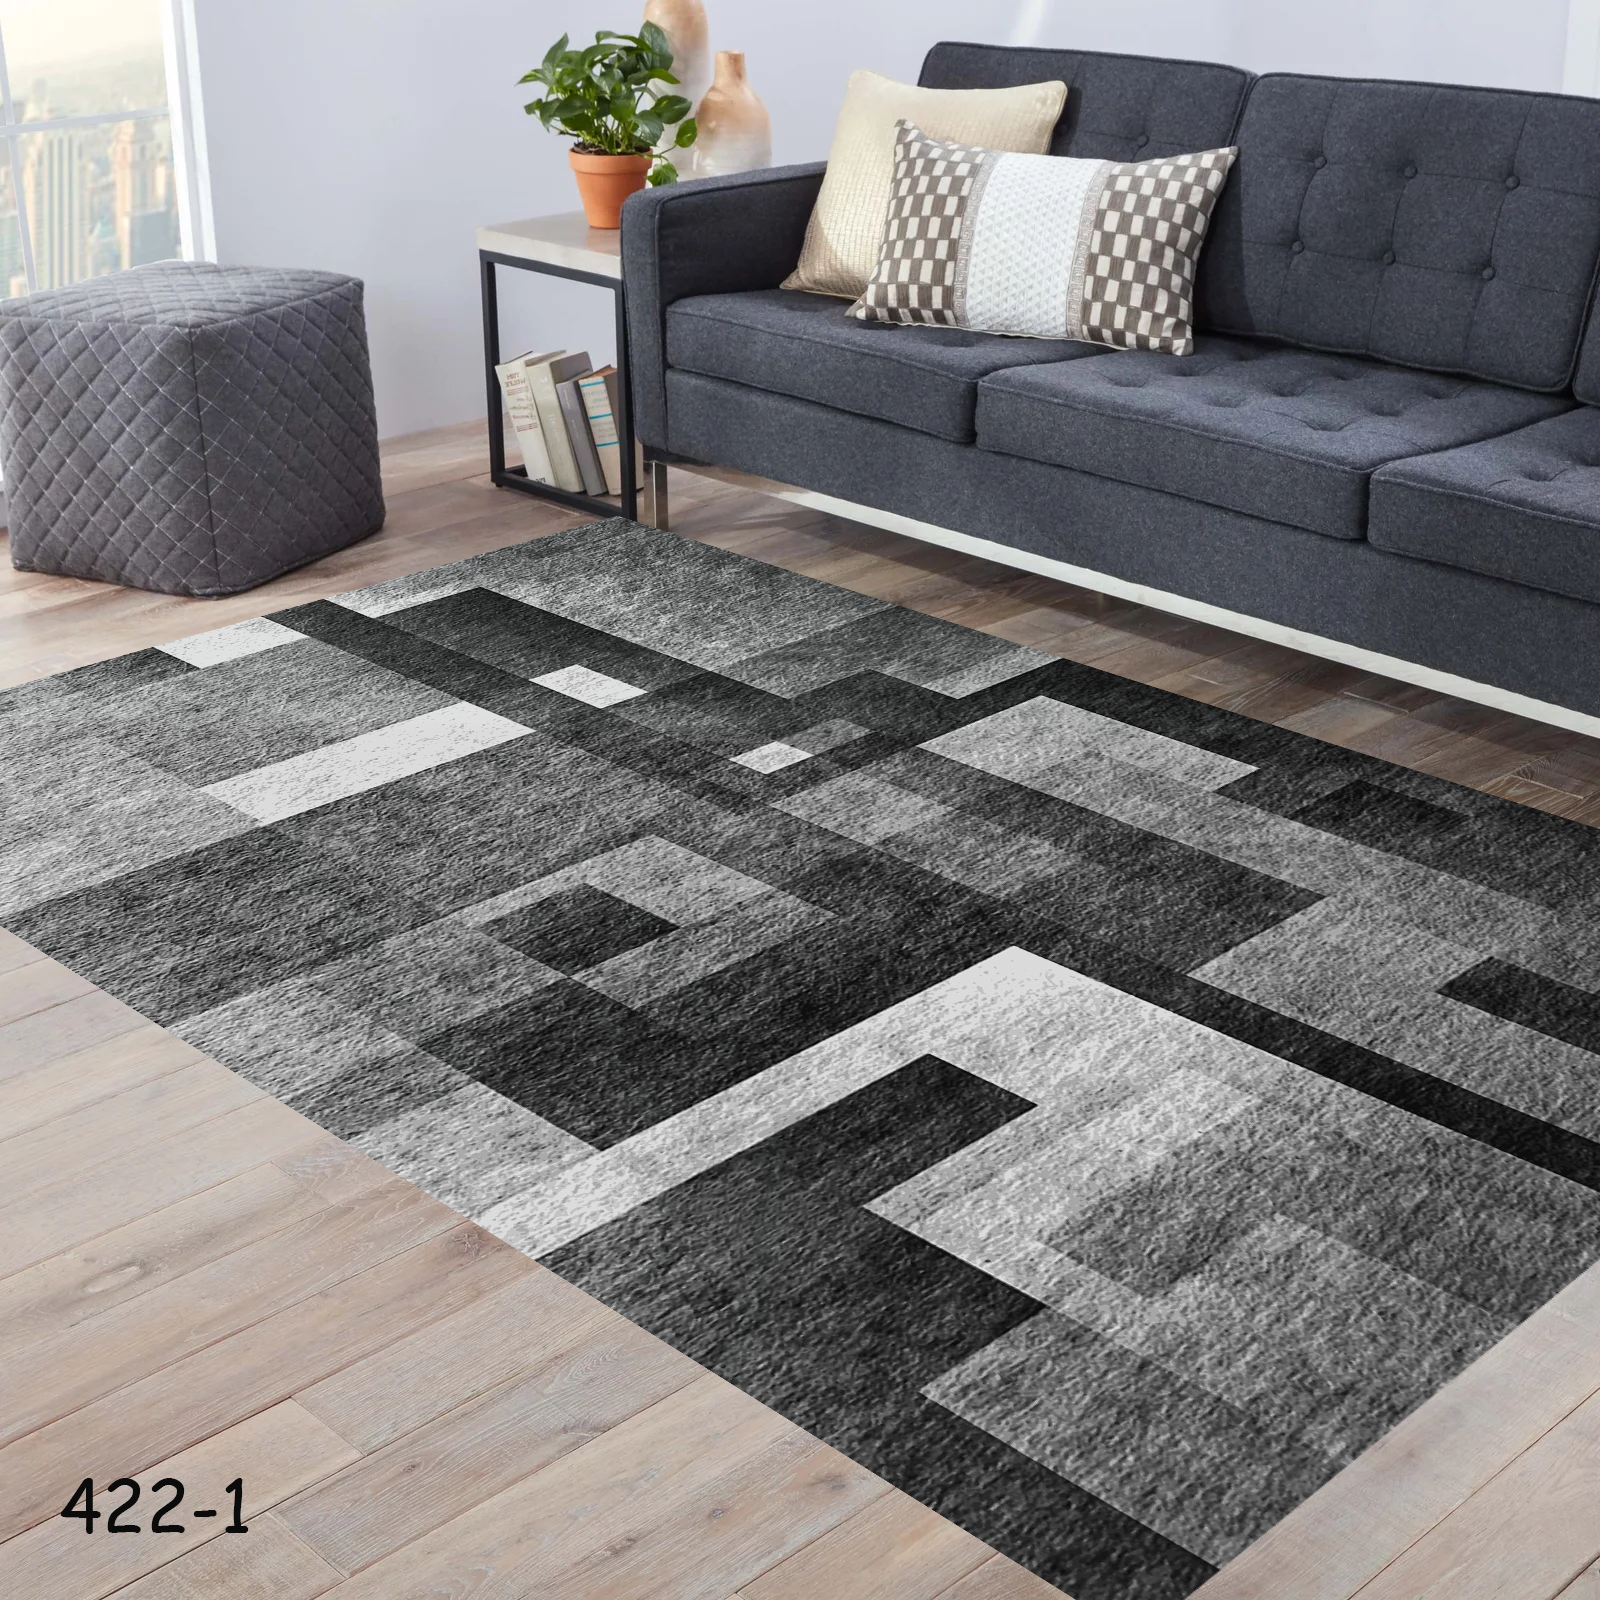 روفرشی طرح فرش طرح مربع های تیره روشن کد 1-422